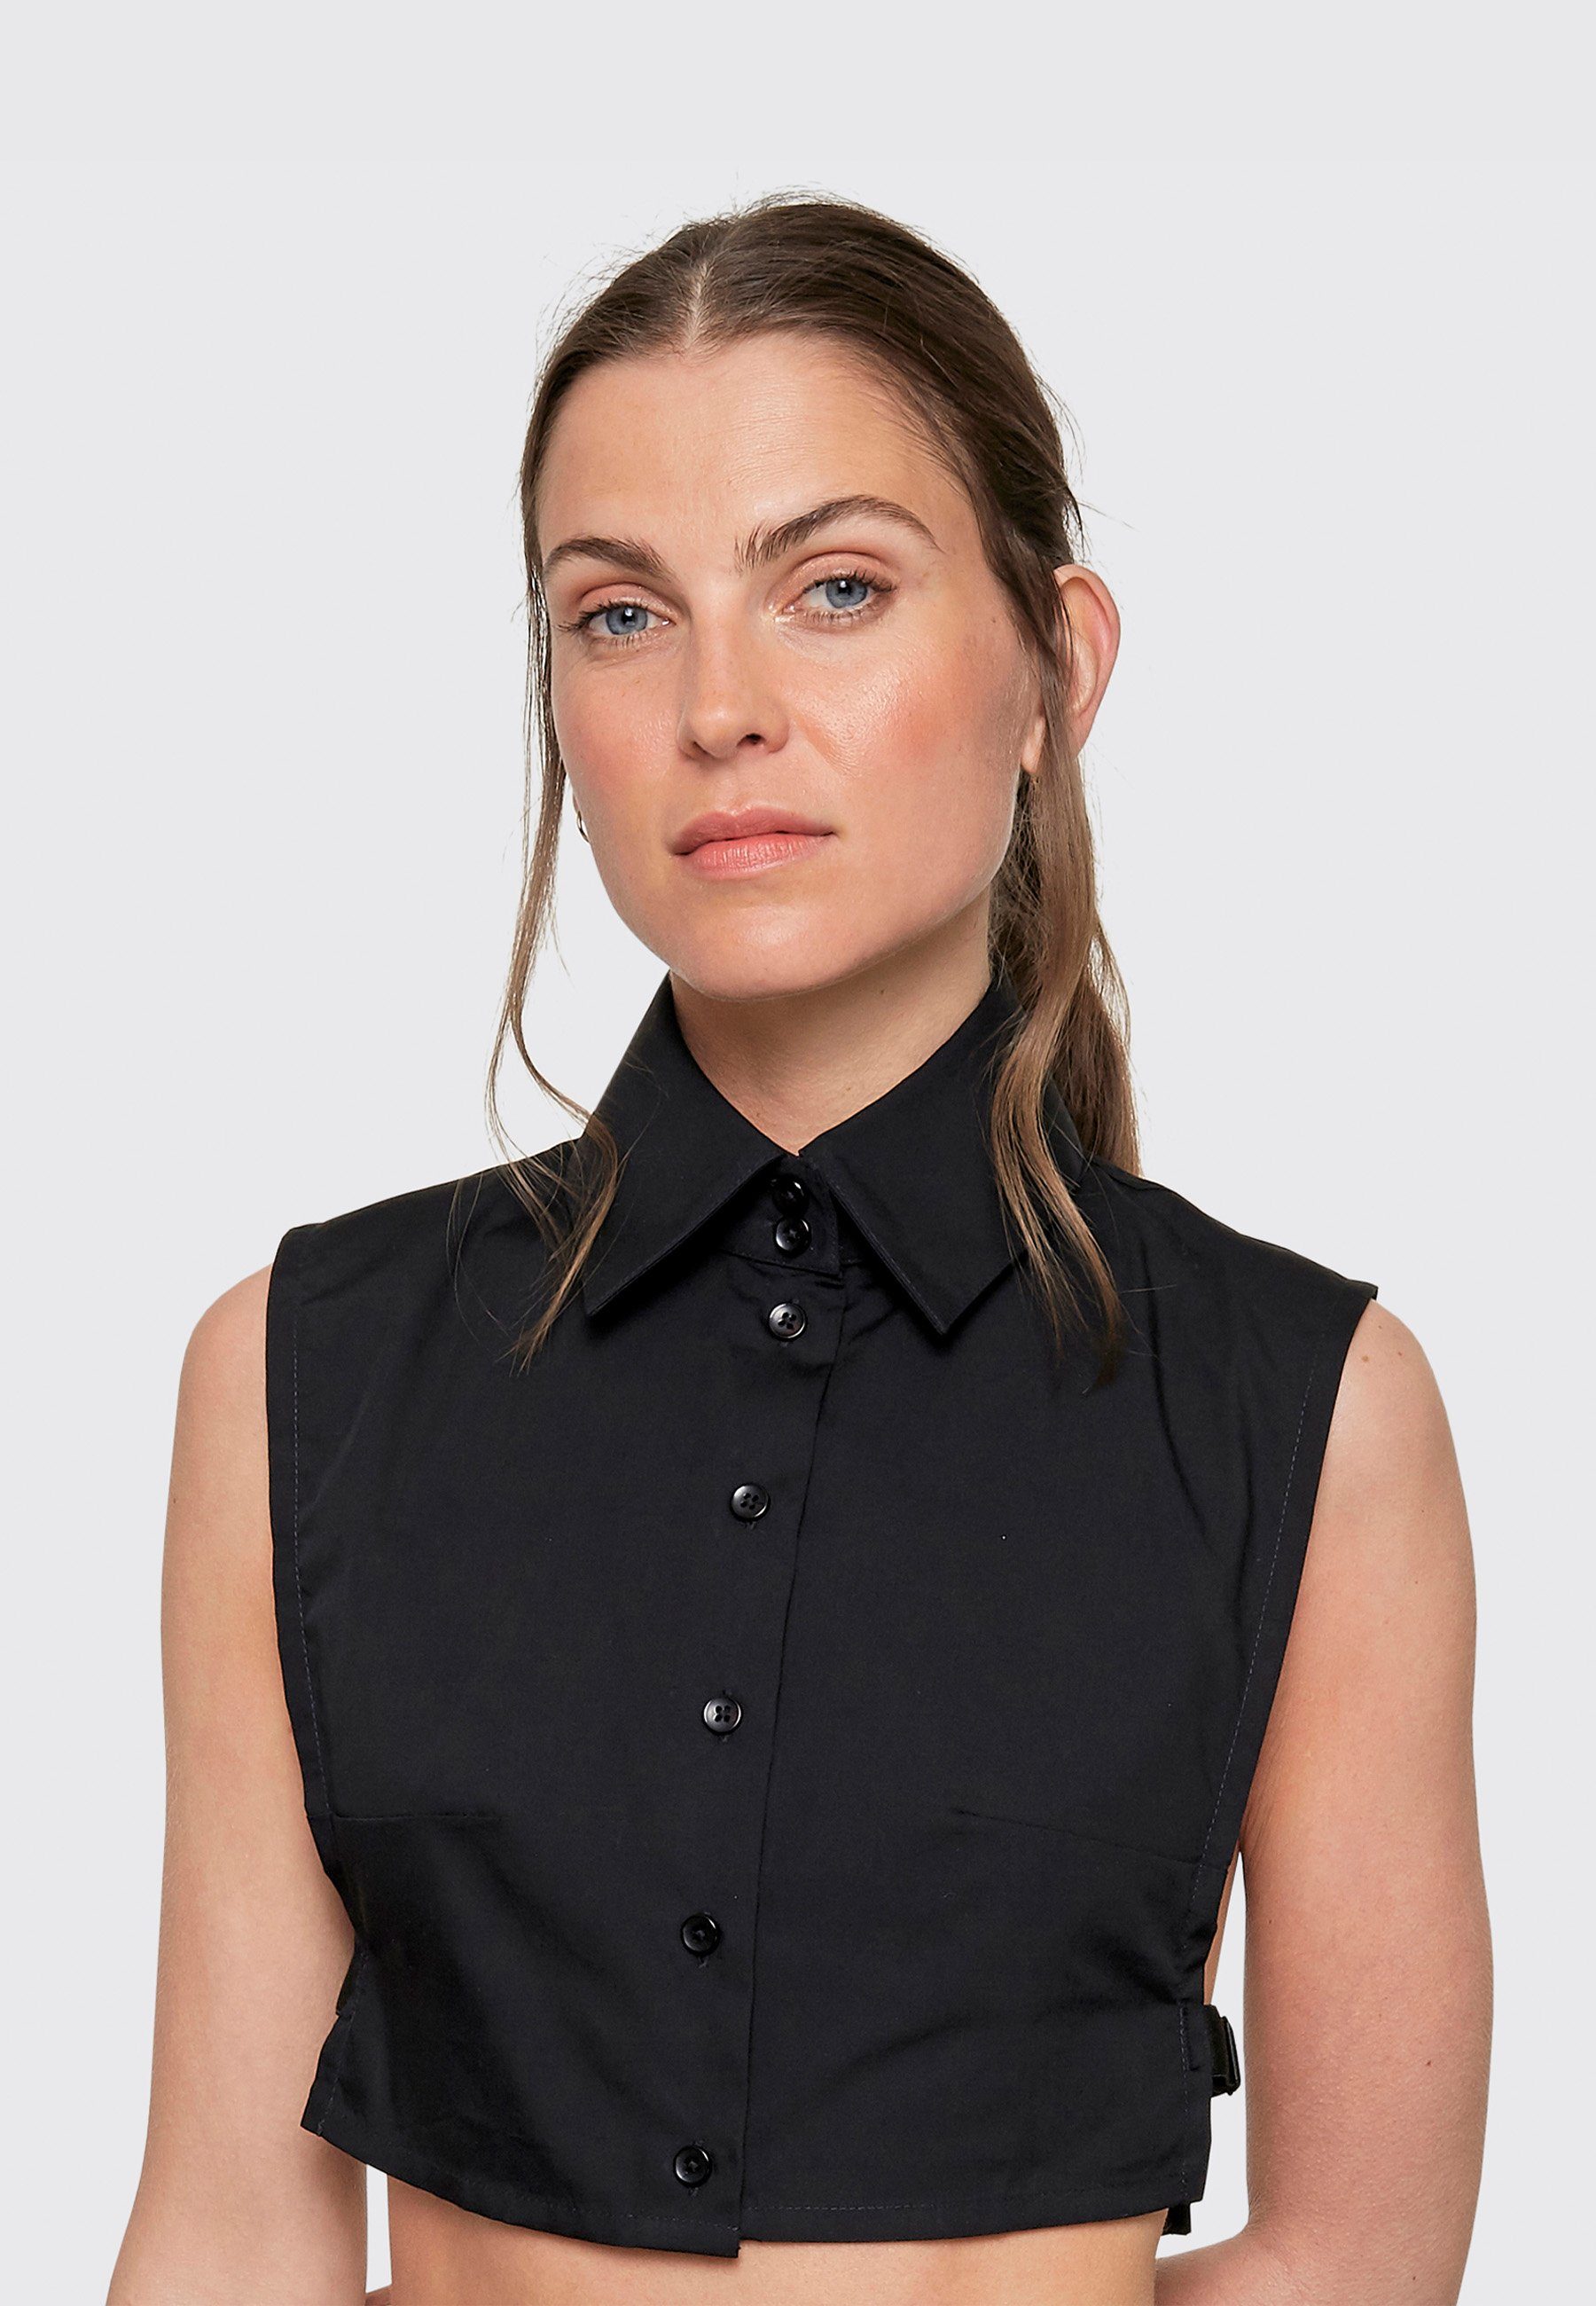 Kragnart Einsteckkragen halbe Hemdbluse Carla-Kragen, (Einsteckkragen Damen), Elegant und stylisch, Hergestellt in Europa schwarz